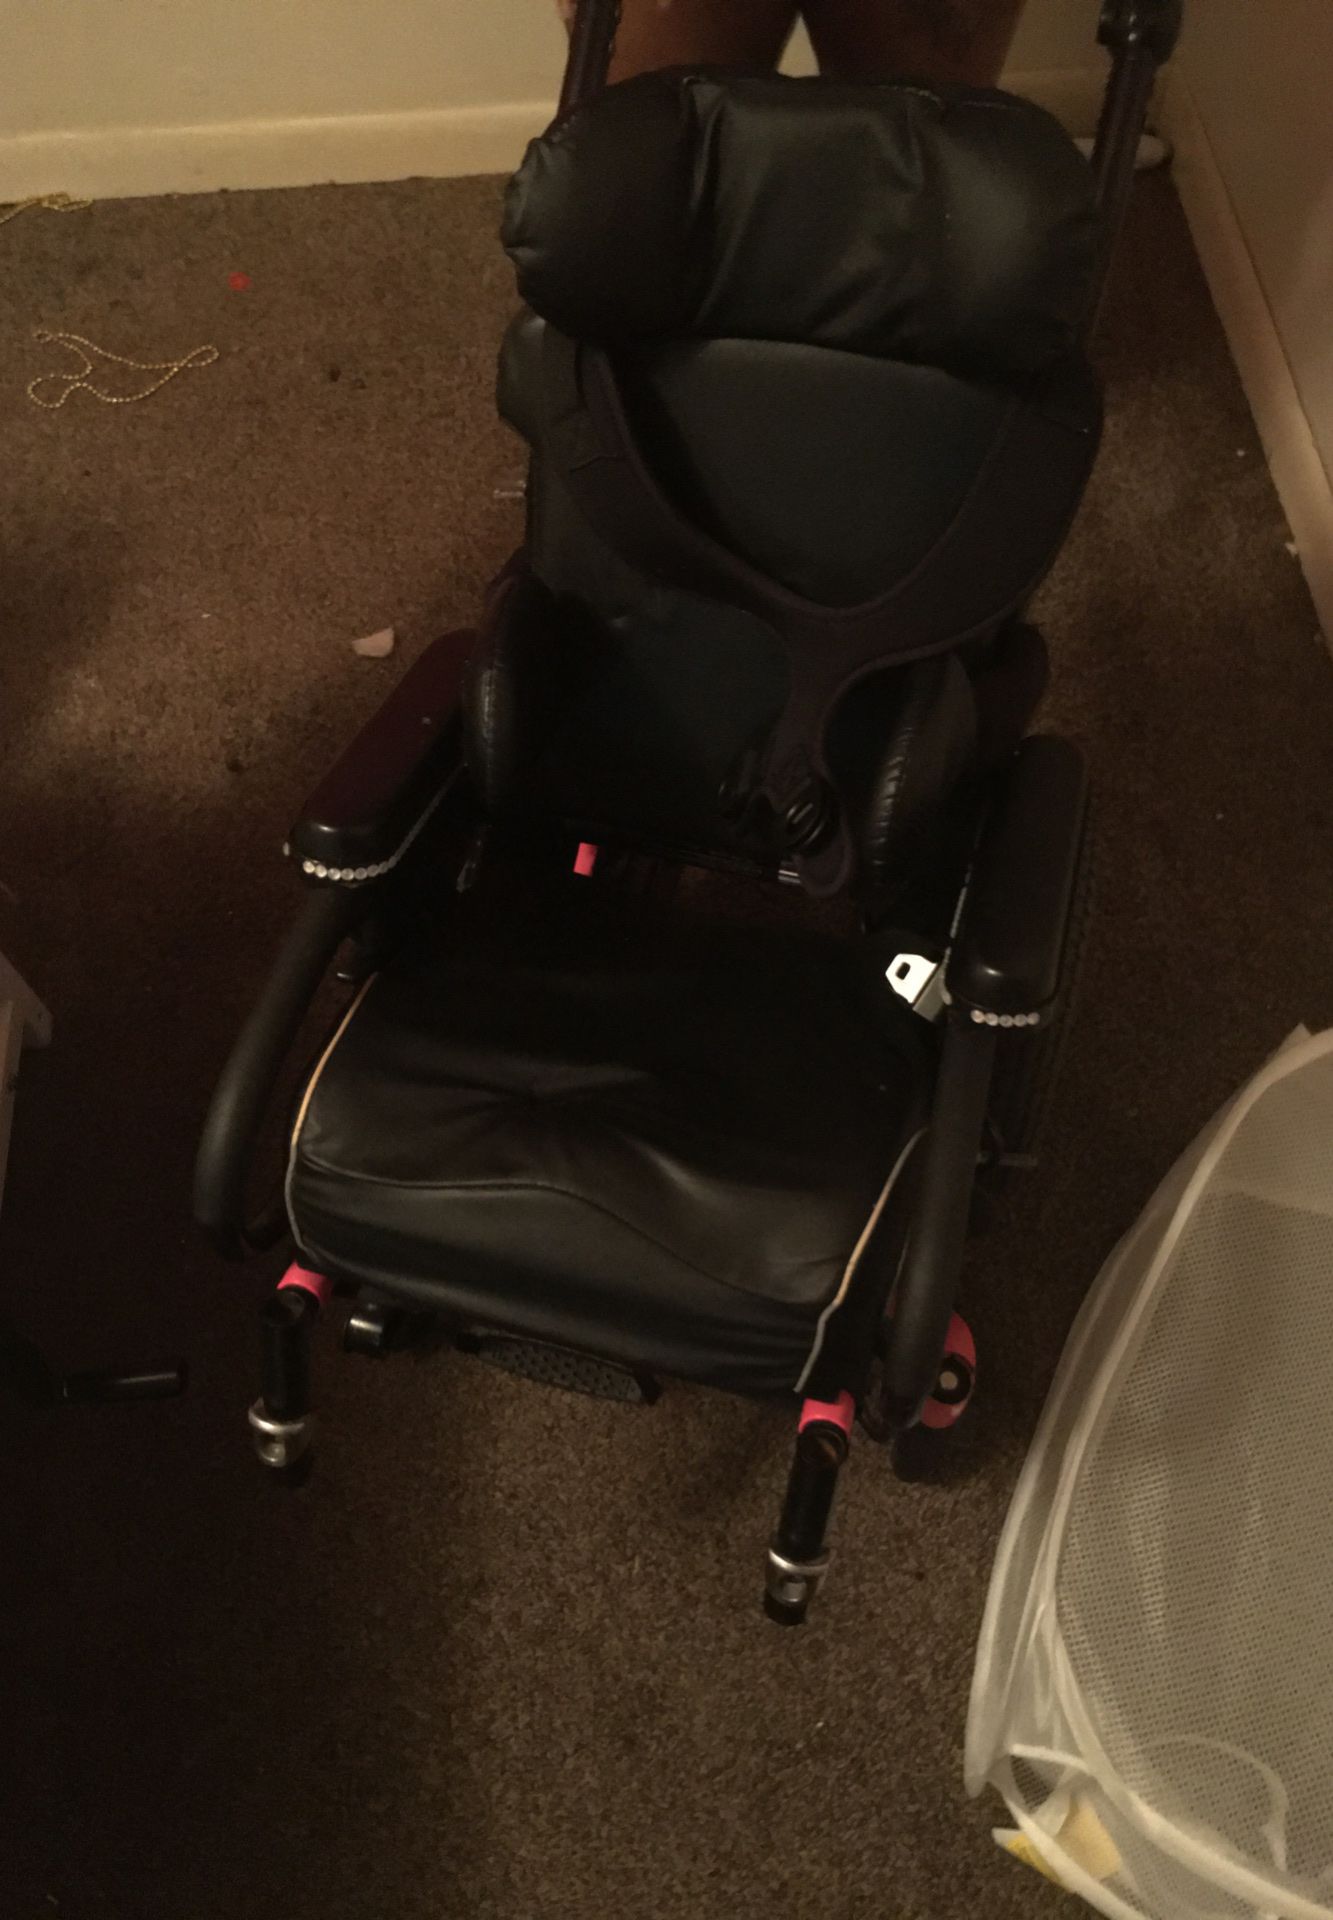 Free zippie Irish wheelchair